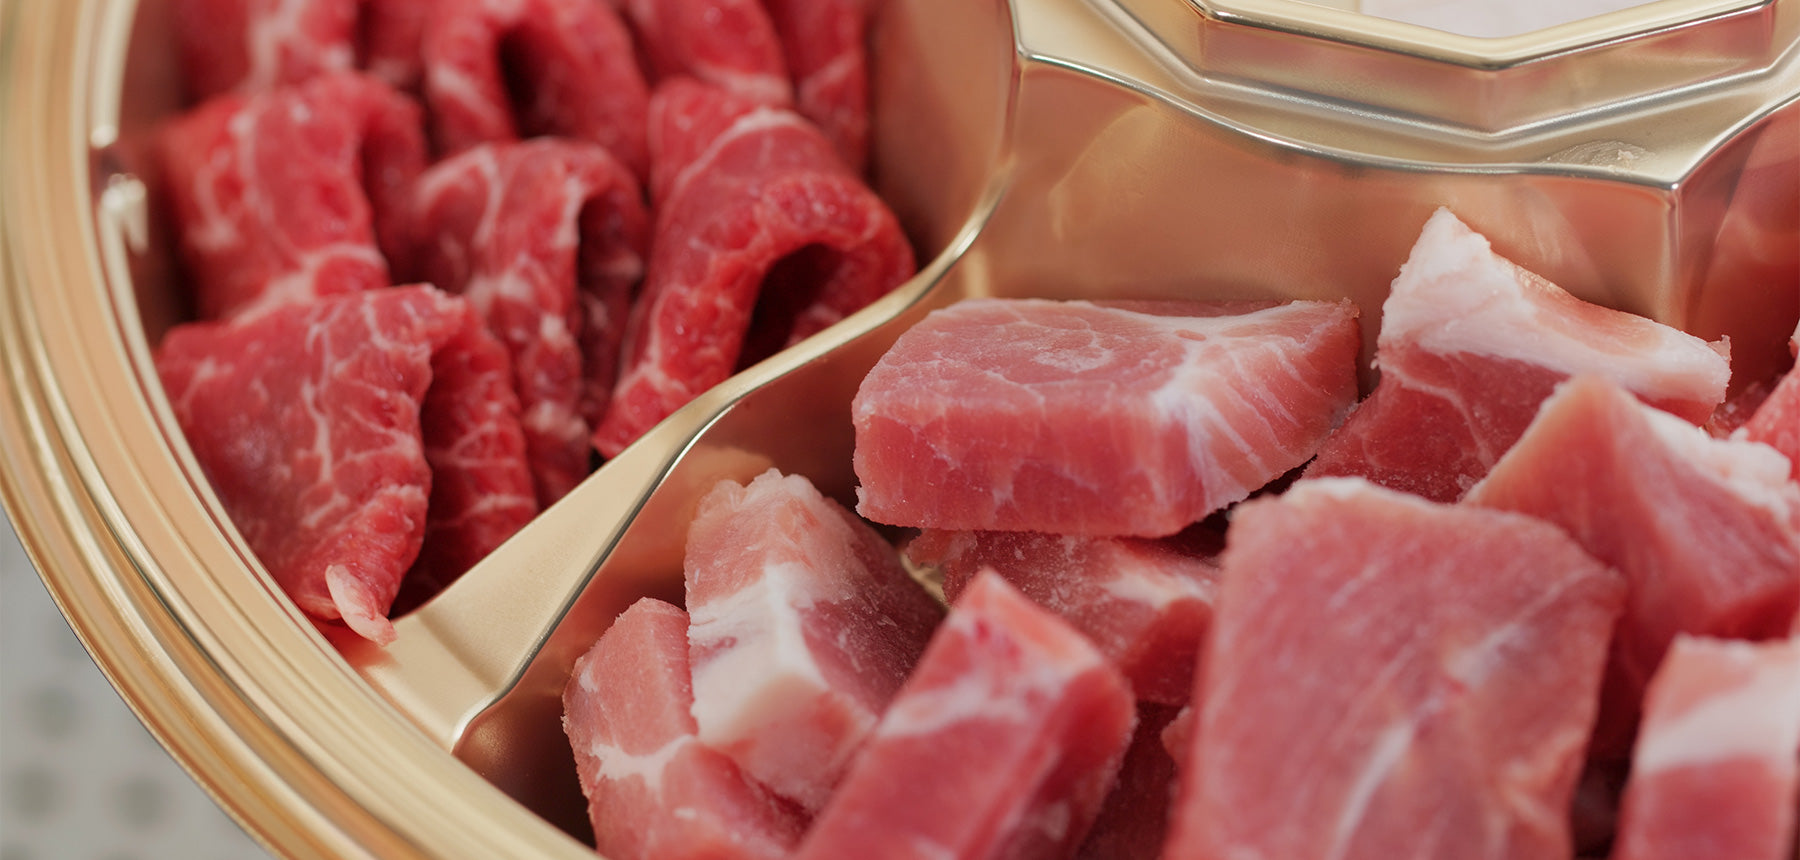 fresh cut raw beef and pork